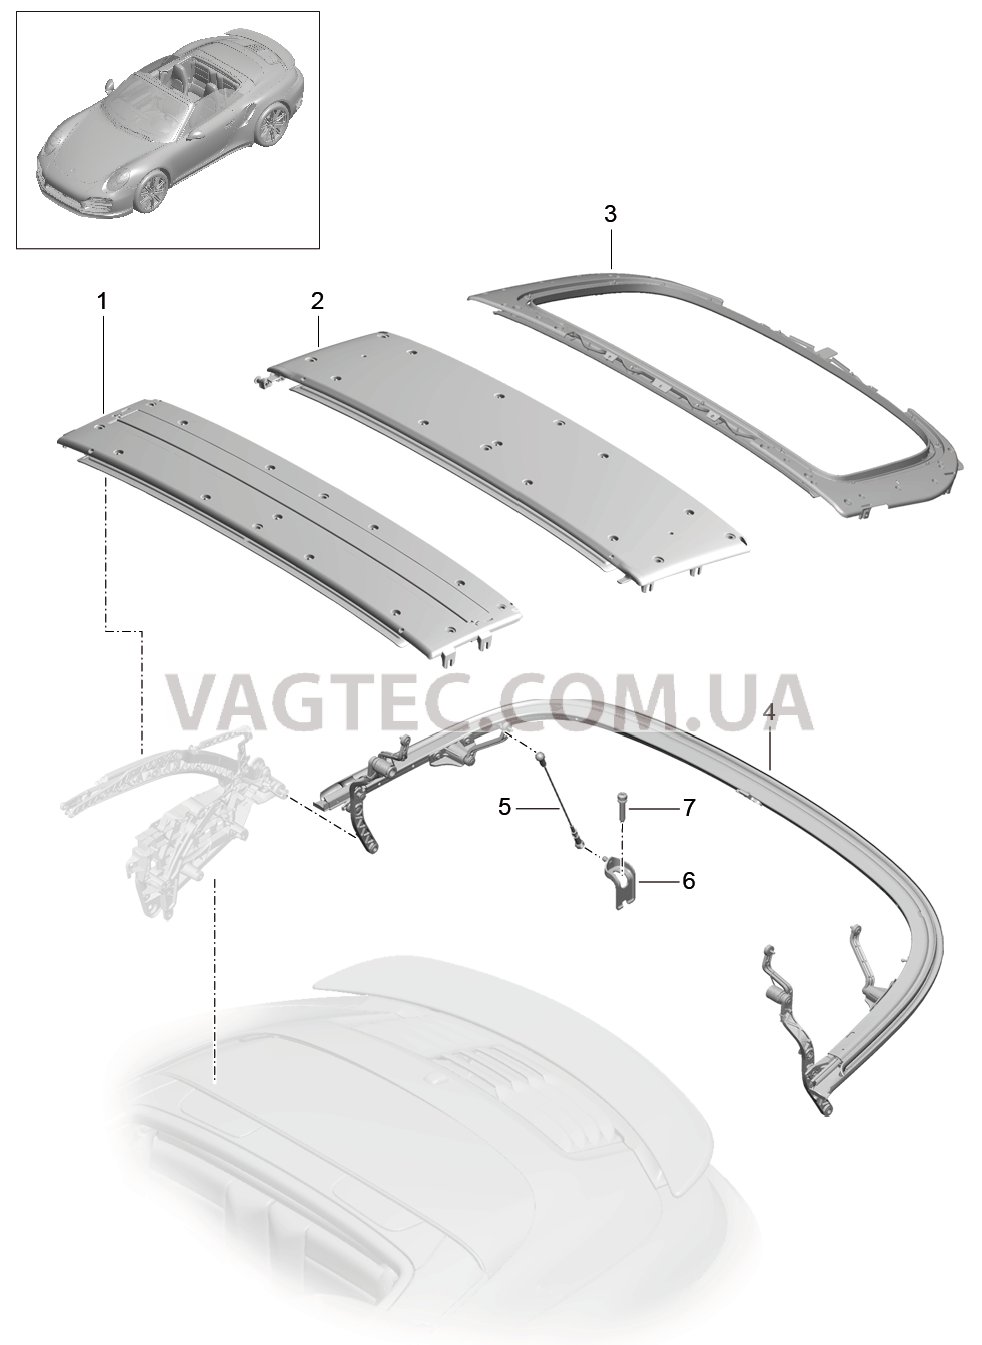 811-020 Каркас складного верха, Отдельные детали, Дуга
						
						CABRIO для PORSCHE Porsche991Turbo 2014-2017